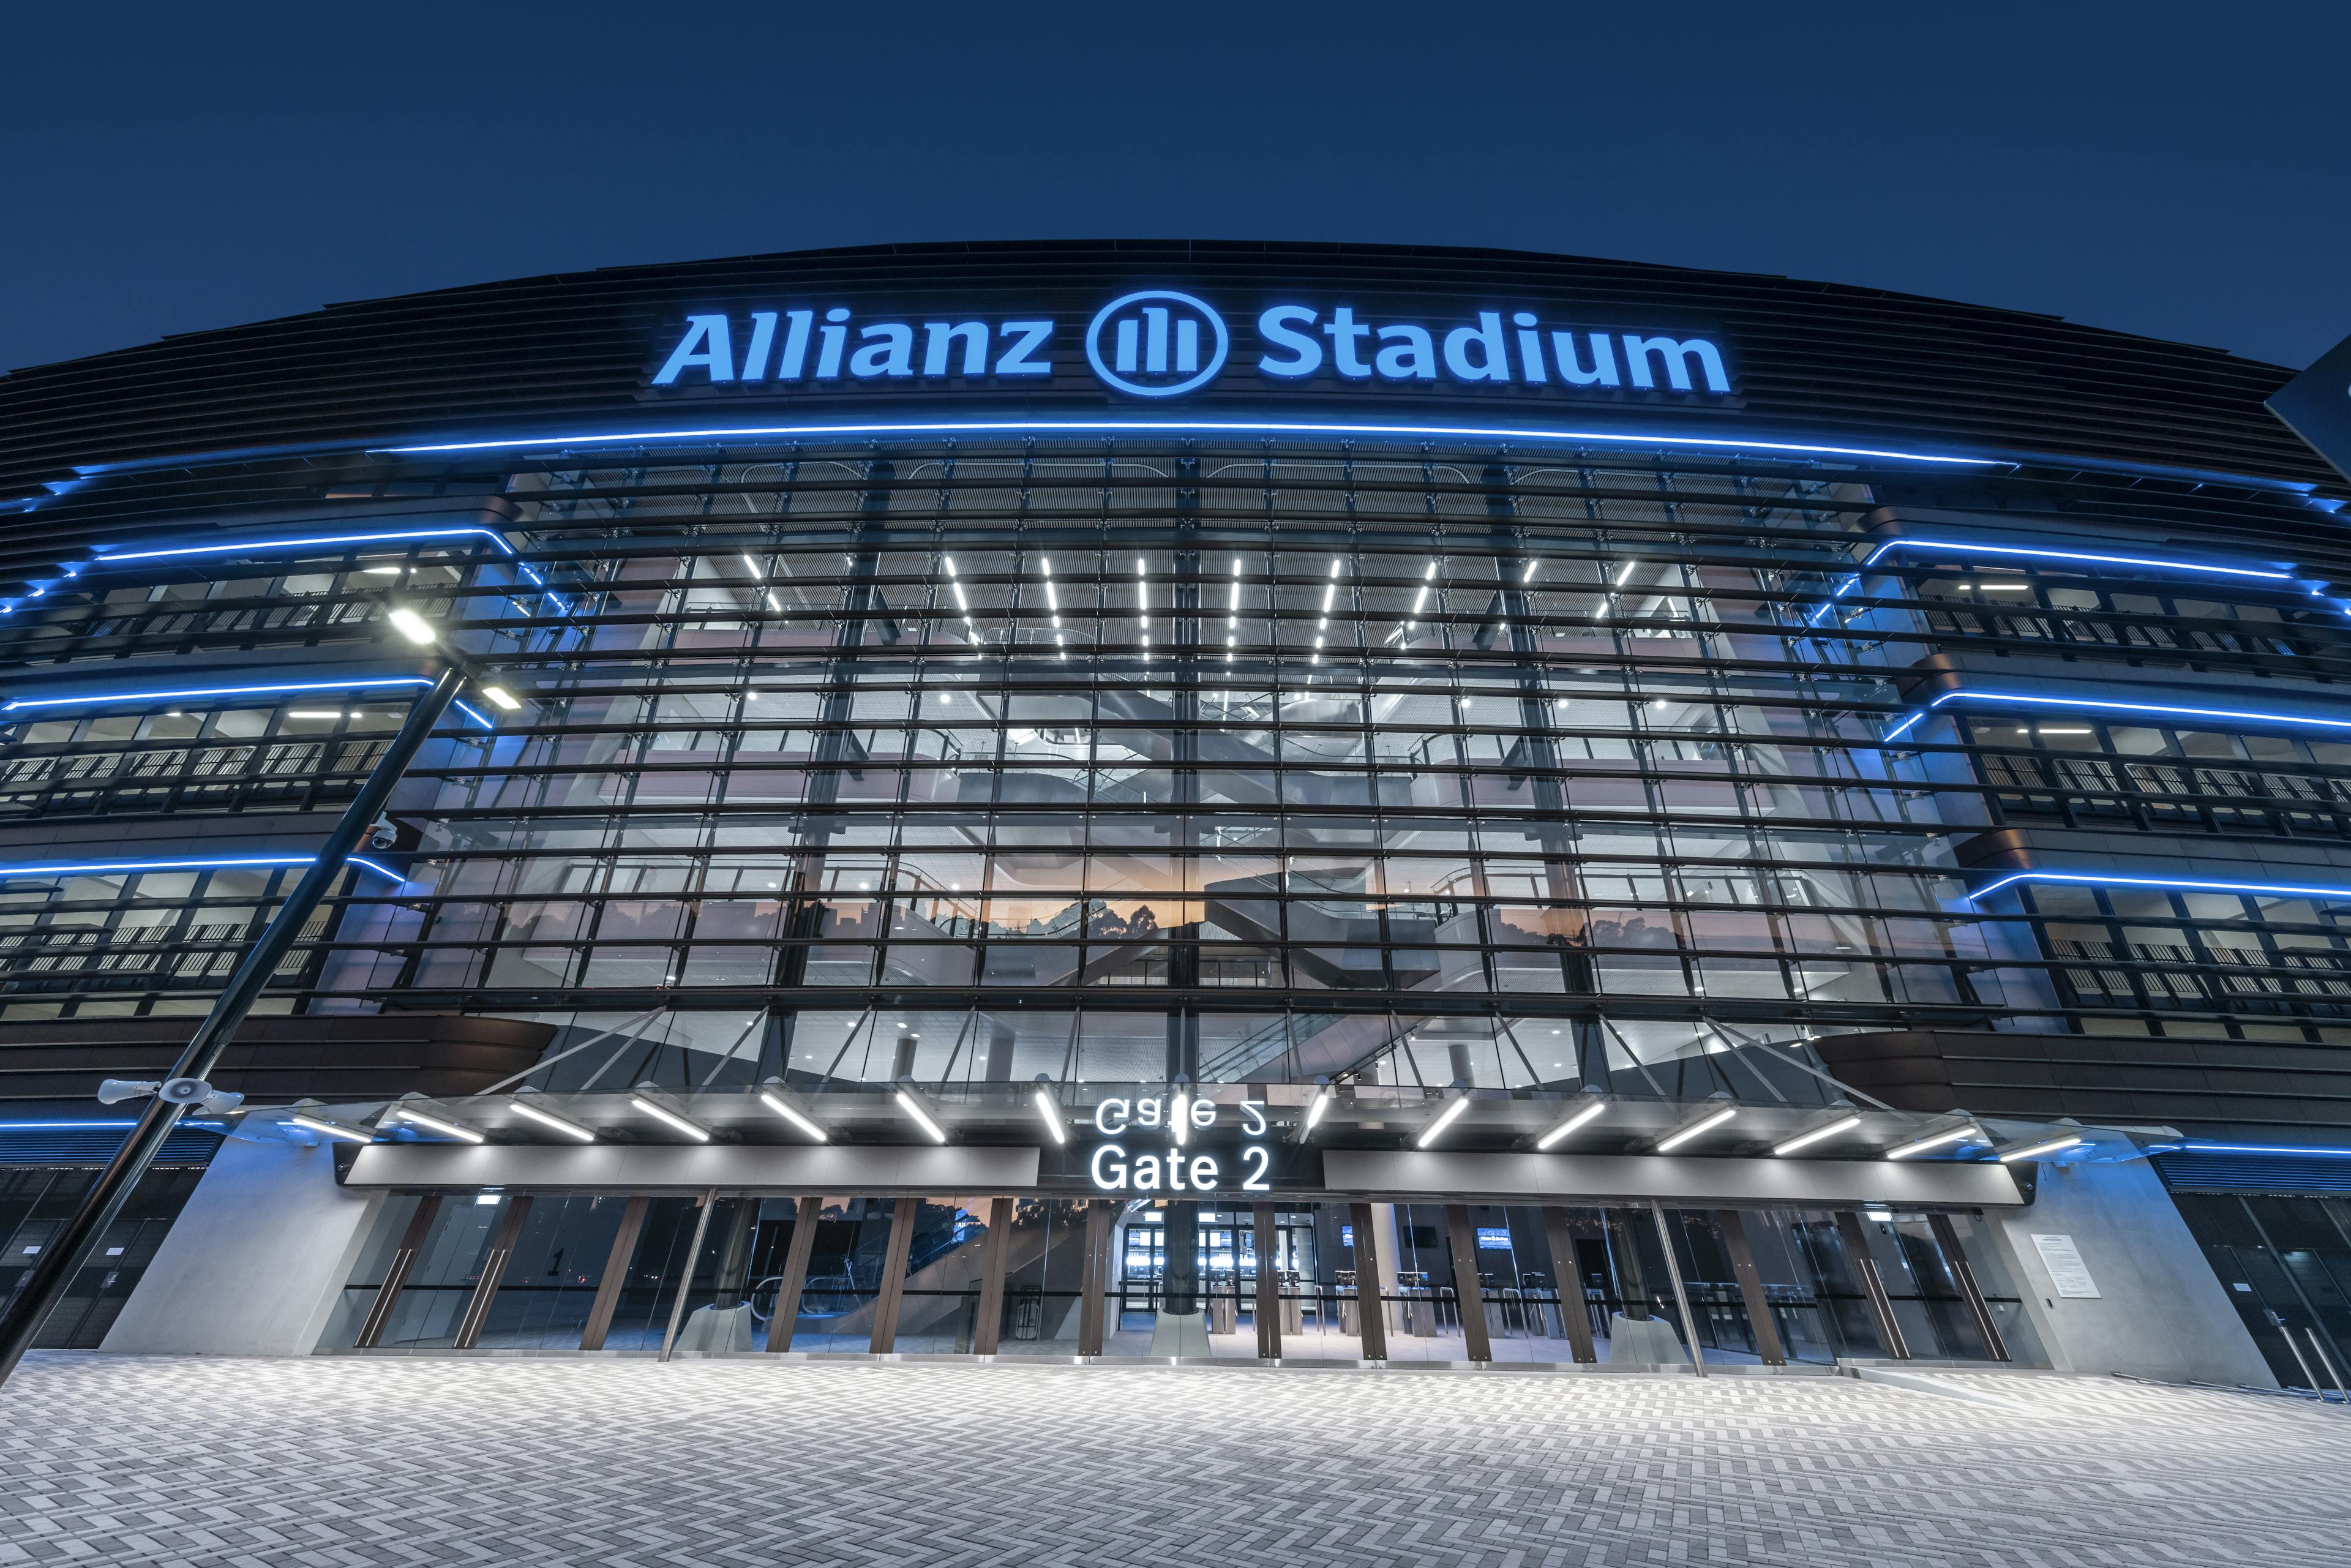 The Waratahs return home to Allianz Stadium in 2023